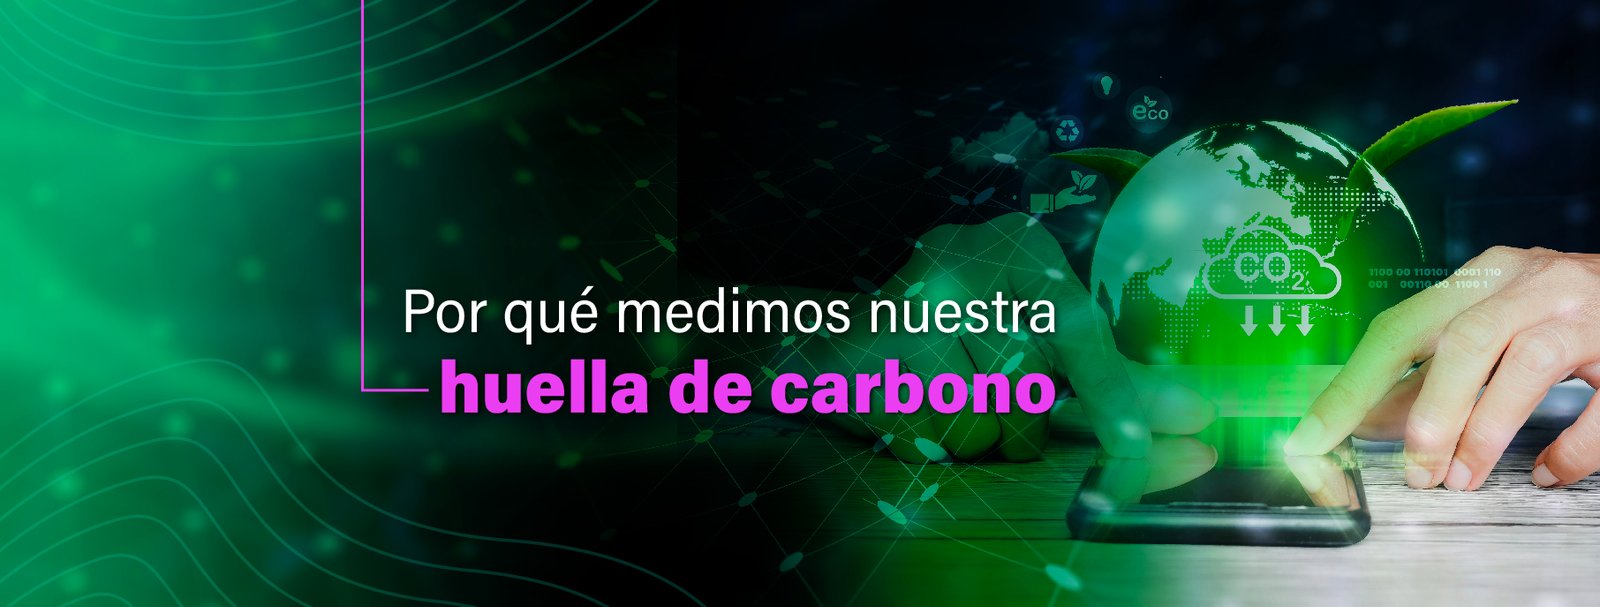 Huella de carbono-IT Patagonia-Empresa B